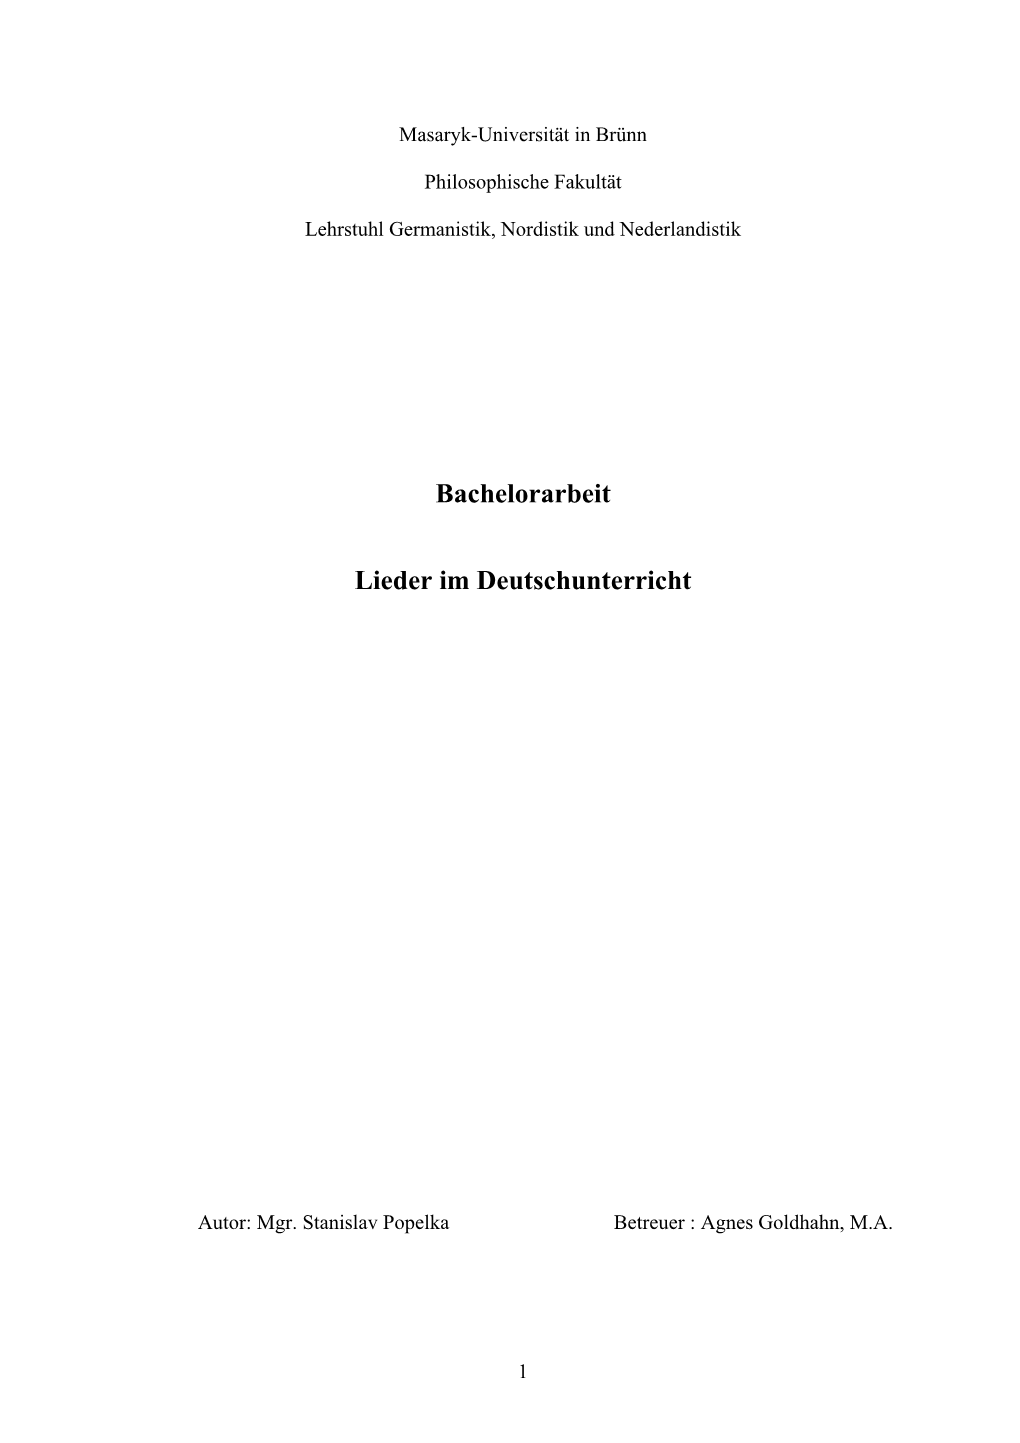 Bachelorarbeit Lieder Im Deutschunterricht